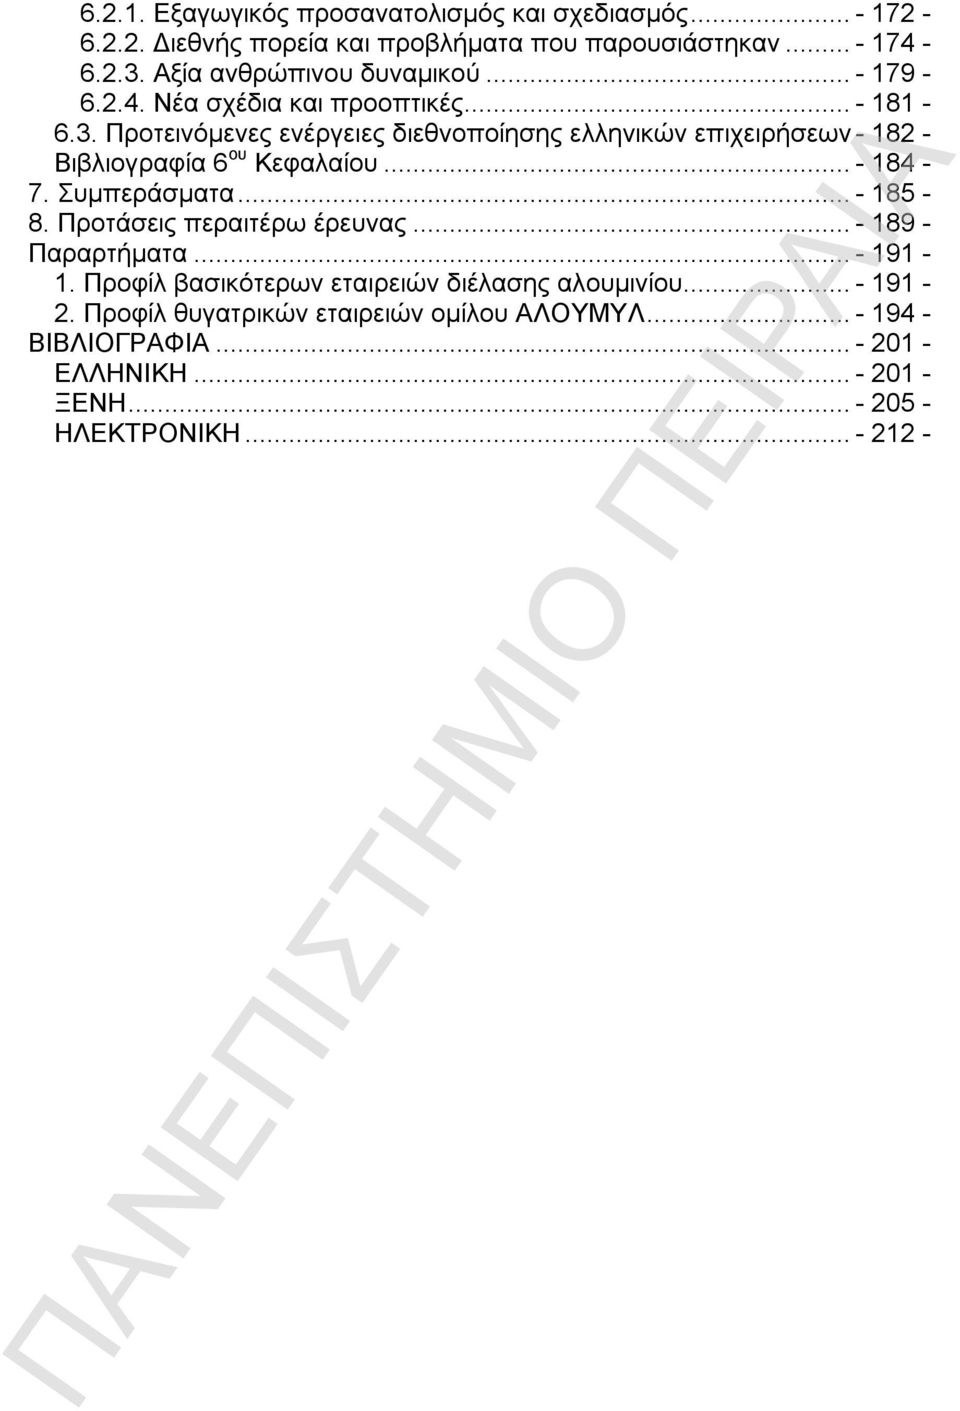 Προτεινόμενες ενέργειες διεθνοποίησης ελληνικών επιχειρήσεων - 182 - Βιβλιογραφία 6 ου Κεφαλαίου...- 184-7. Συμπεράσματα...- 185-8.